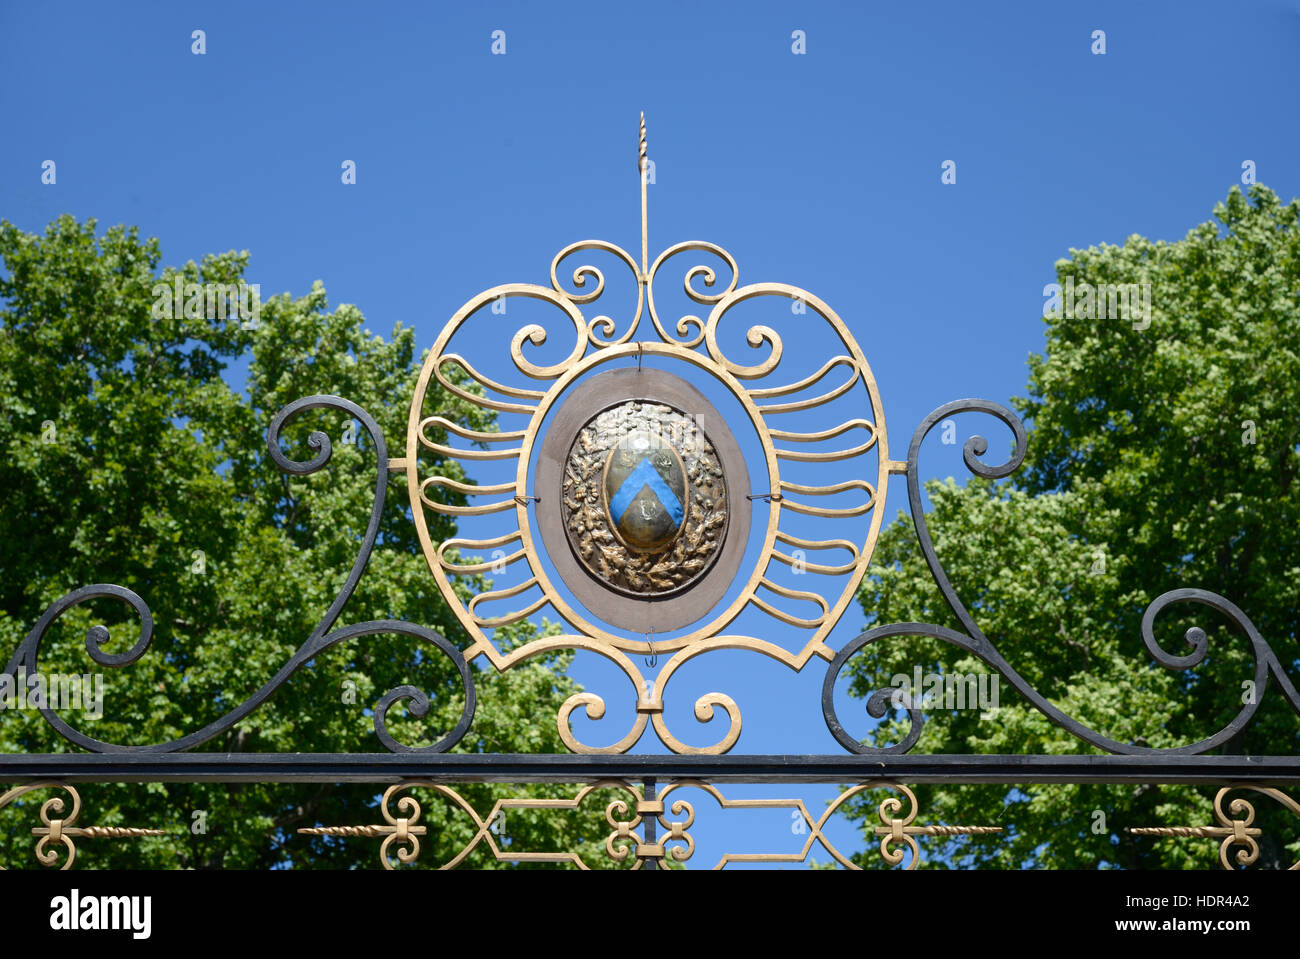 Stemma o simbolo di araldica presso il cancello di ingresso alla c diciottesimo Château de Sauvan Mane, vicino a Forcalquier, Provenza Francia Foto Stock